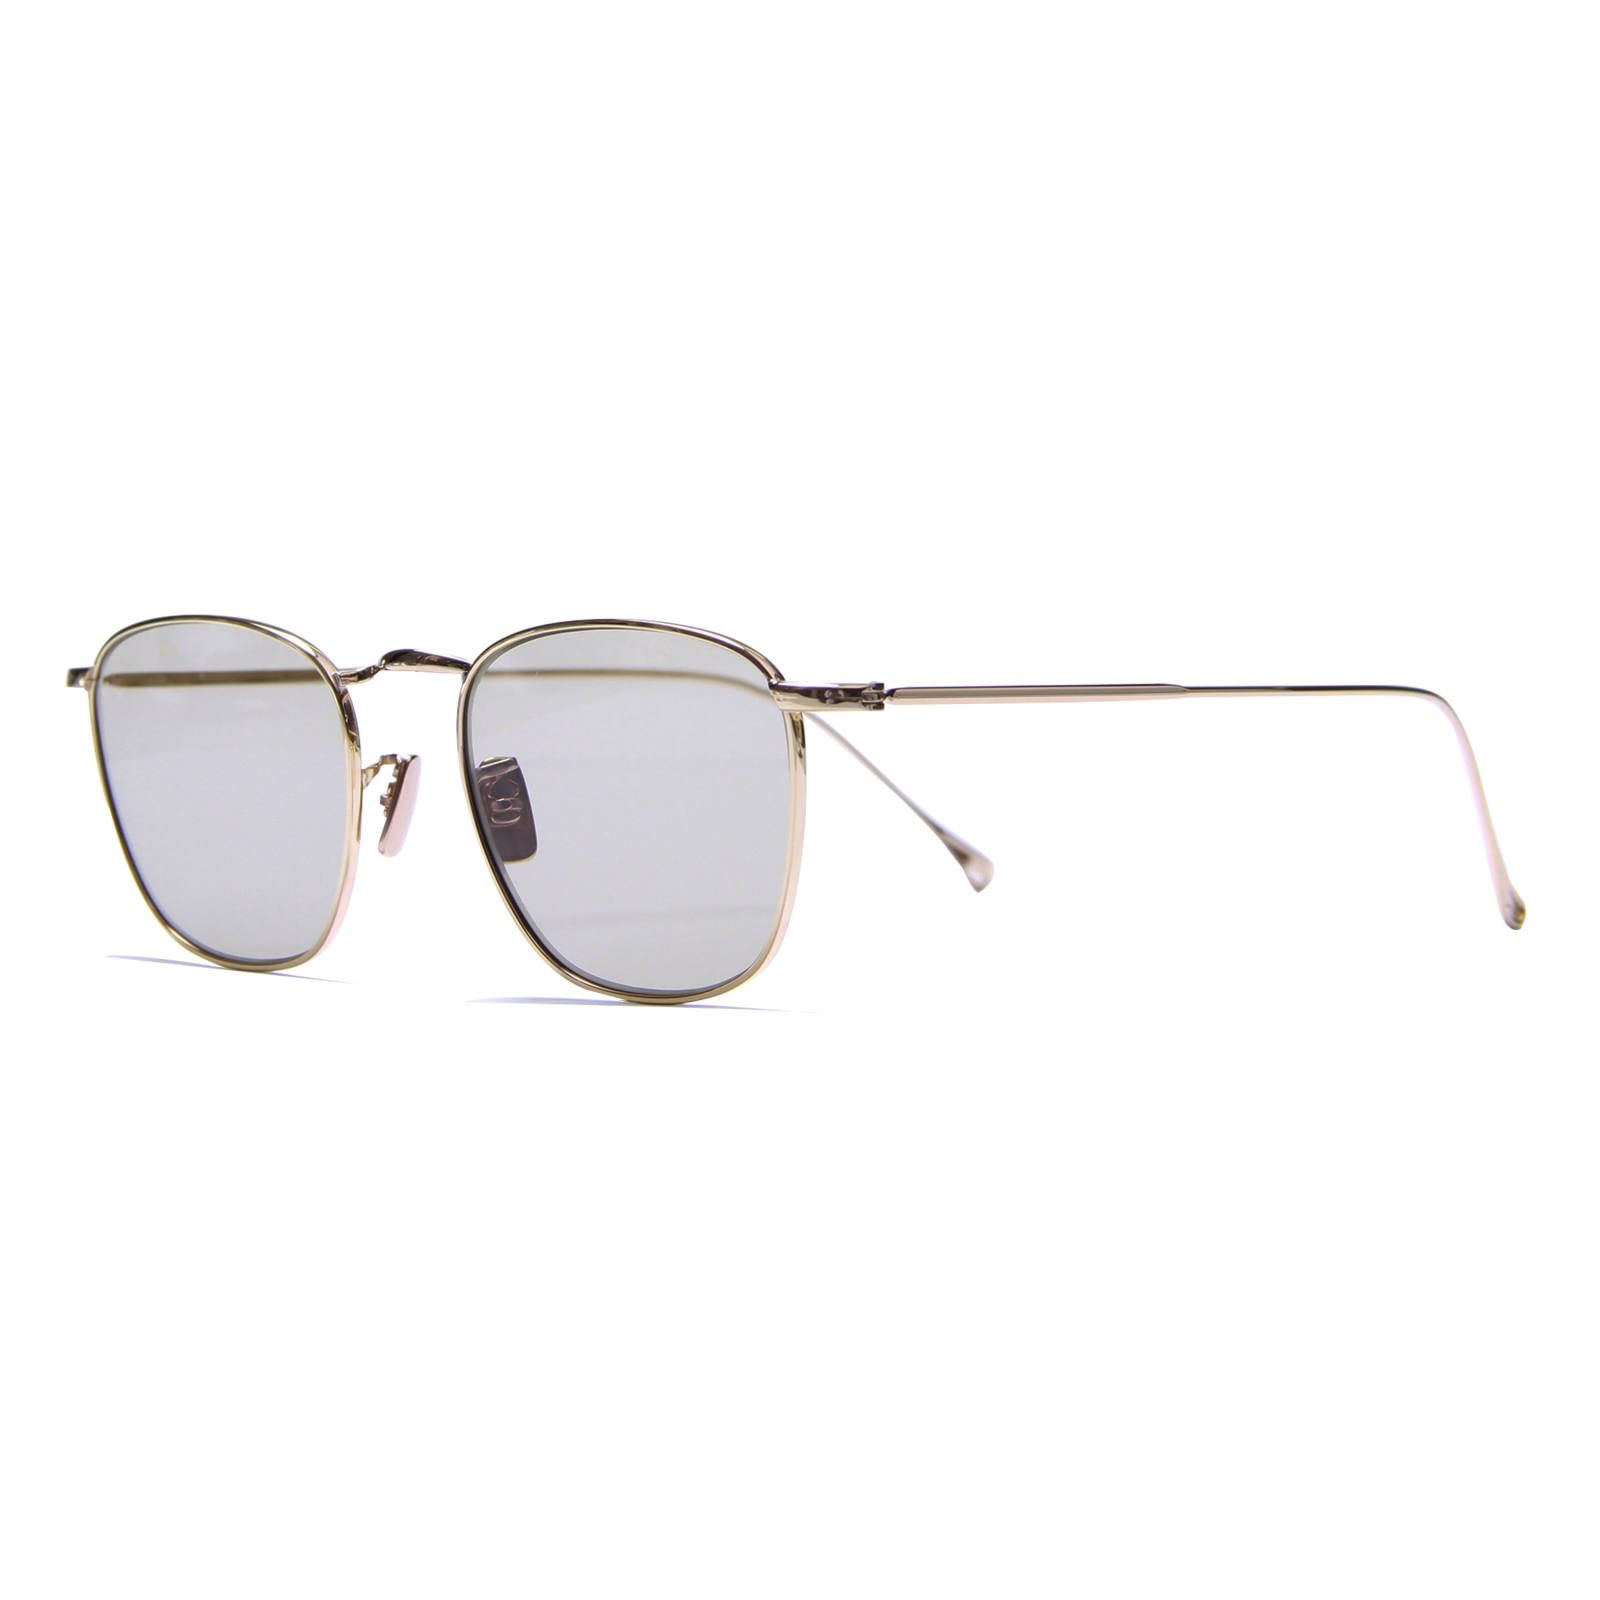 Sara/Gold/Havana (Sunglasses) - 47□19-145